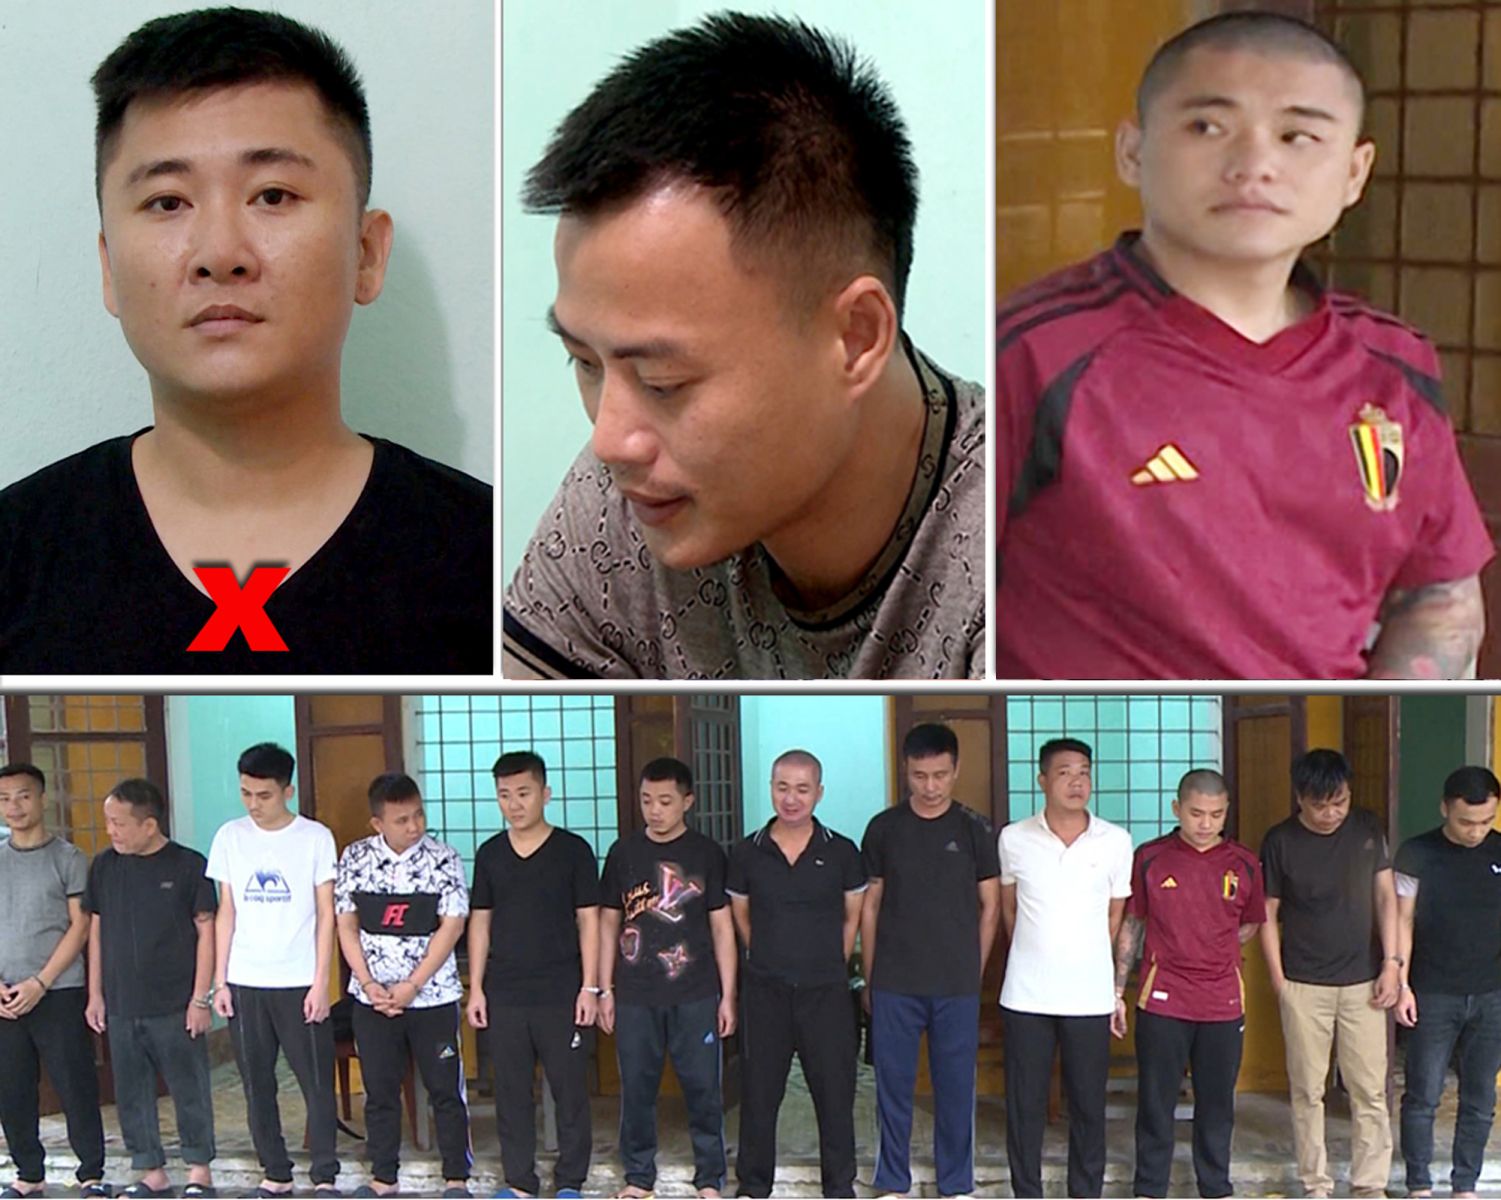 Vũ Đình Hiếu (X), Nguyễn Hữu Tùng, Nguyễn Việt Anh và các đối tượng trong đường dây cá độ bóng đá bị bắt giữ